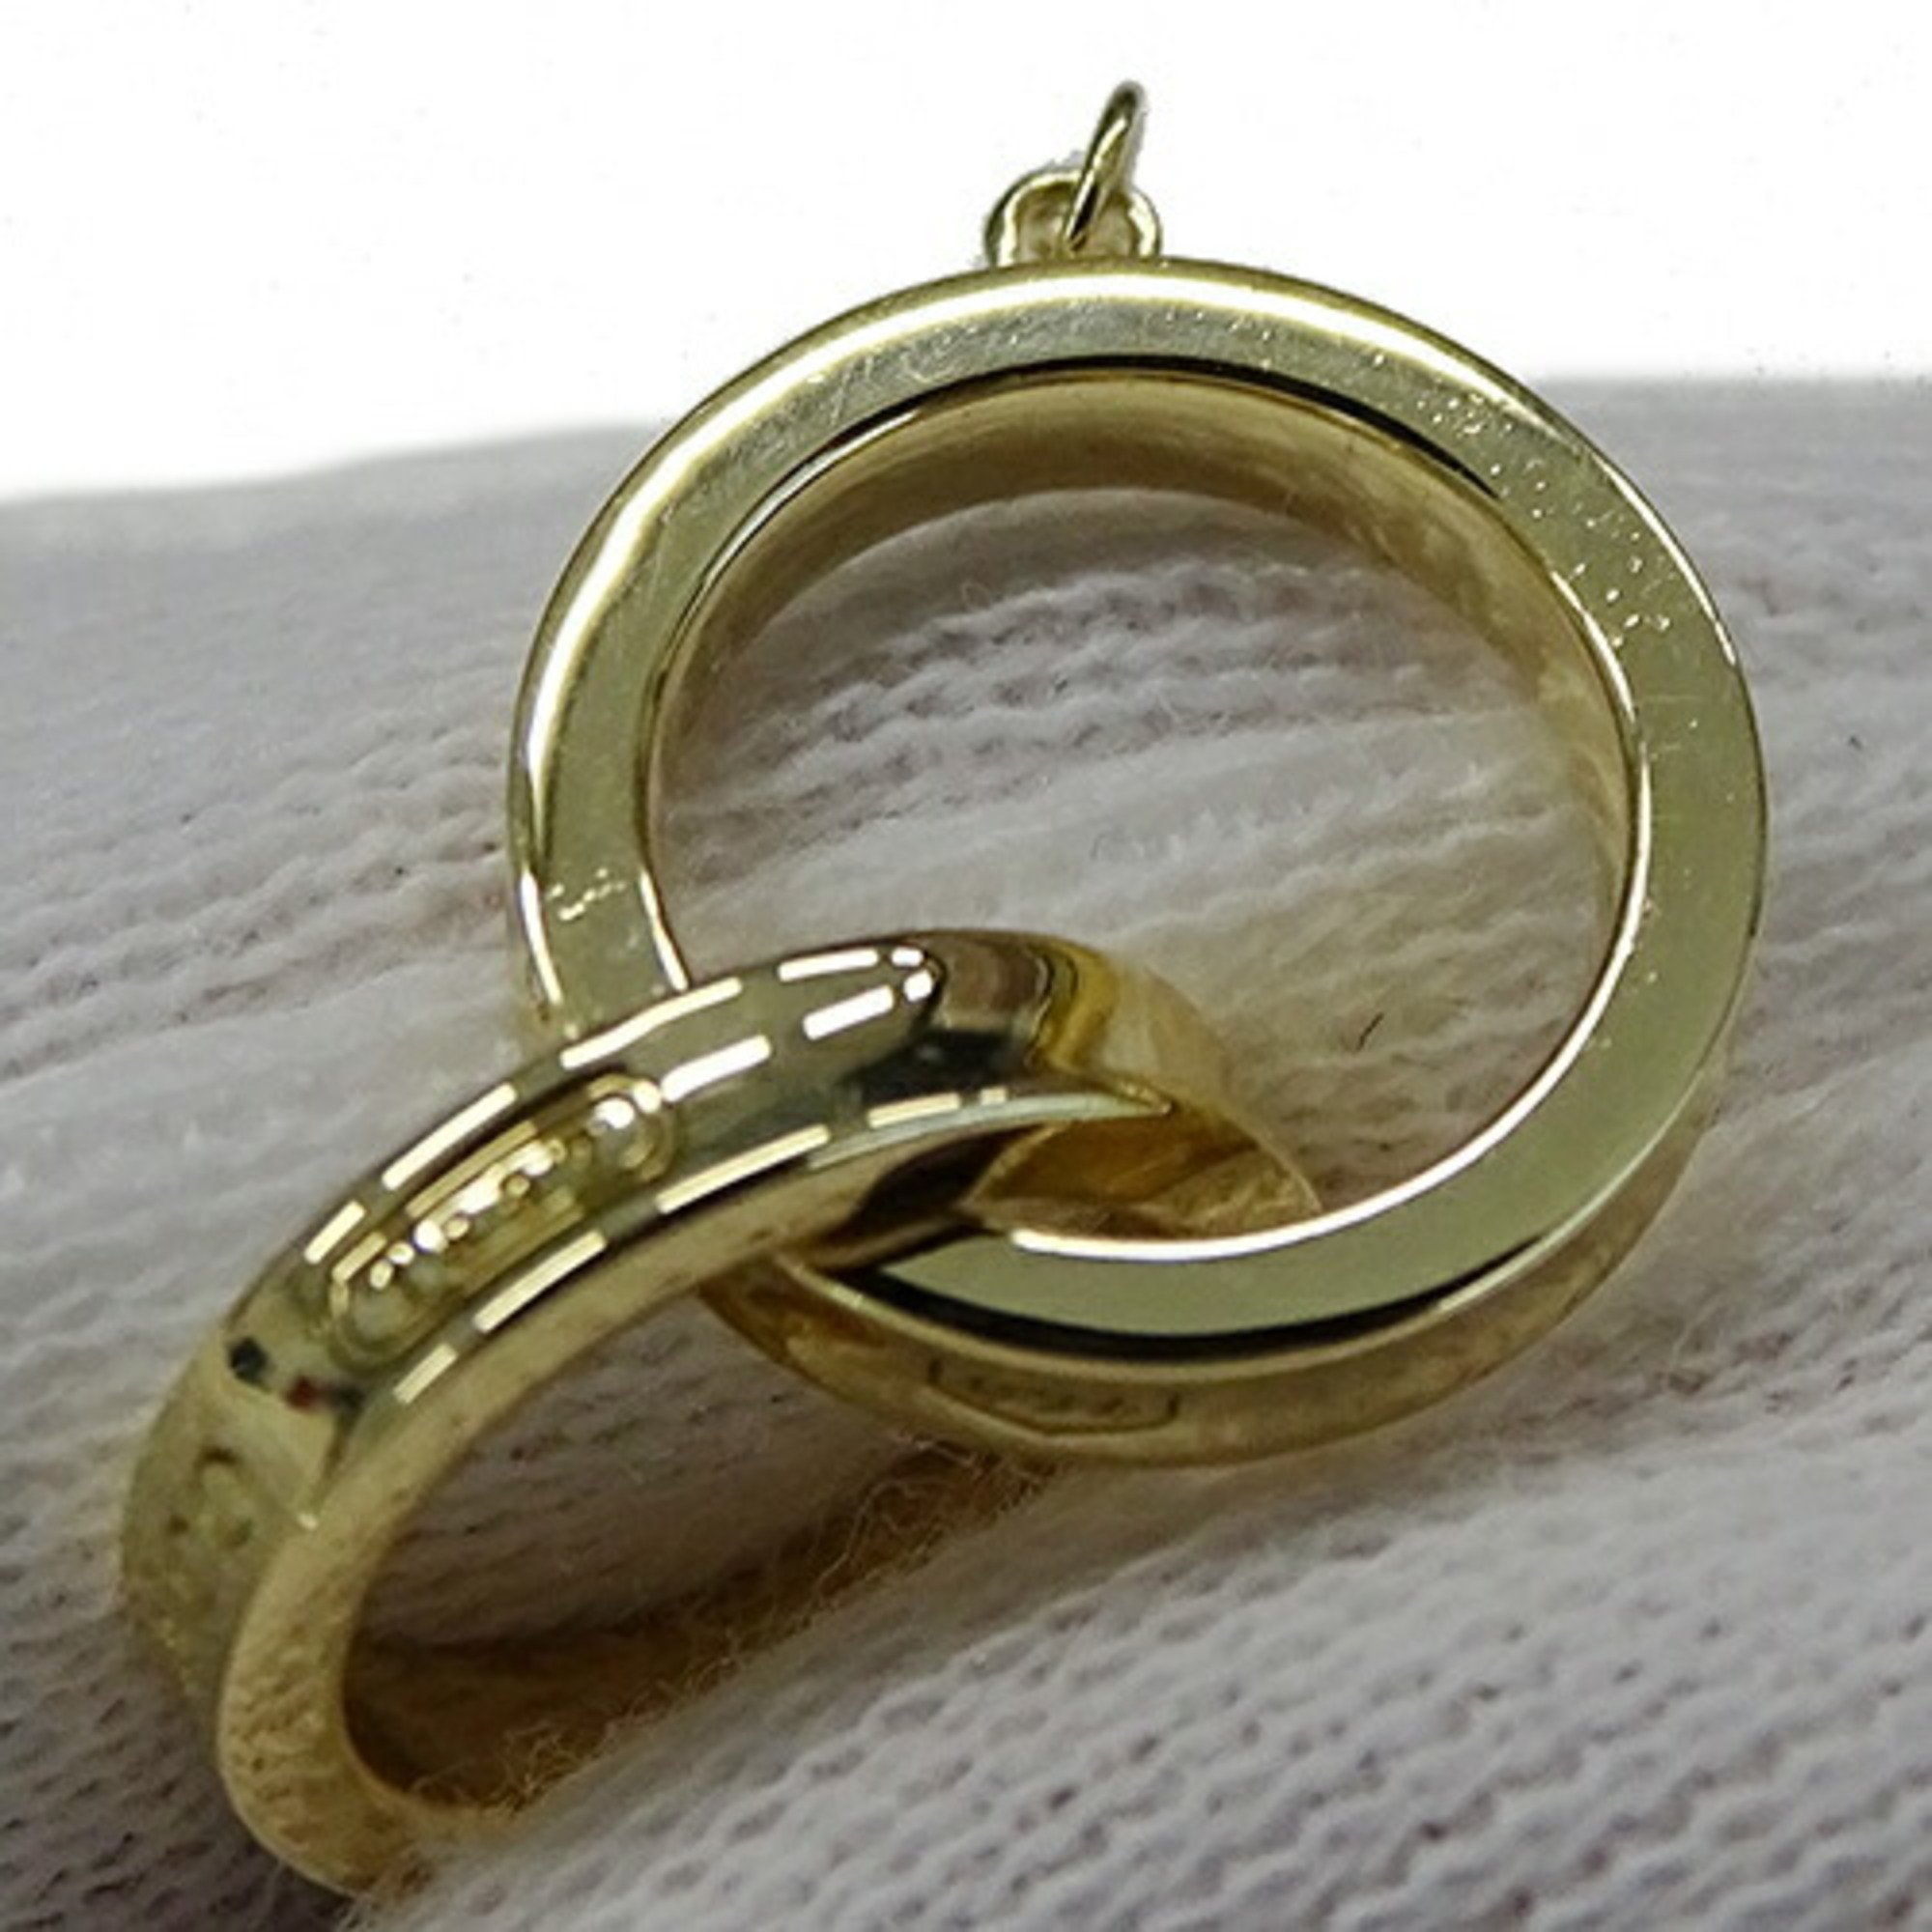 Tiffany & Co. Bracelet for Women 750YG 1837 Interlocking Circle Yellow Gold Polished